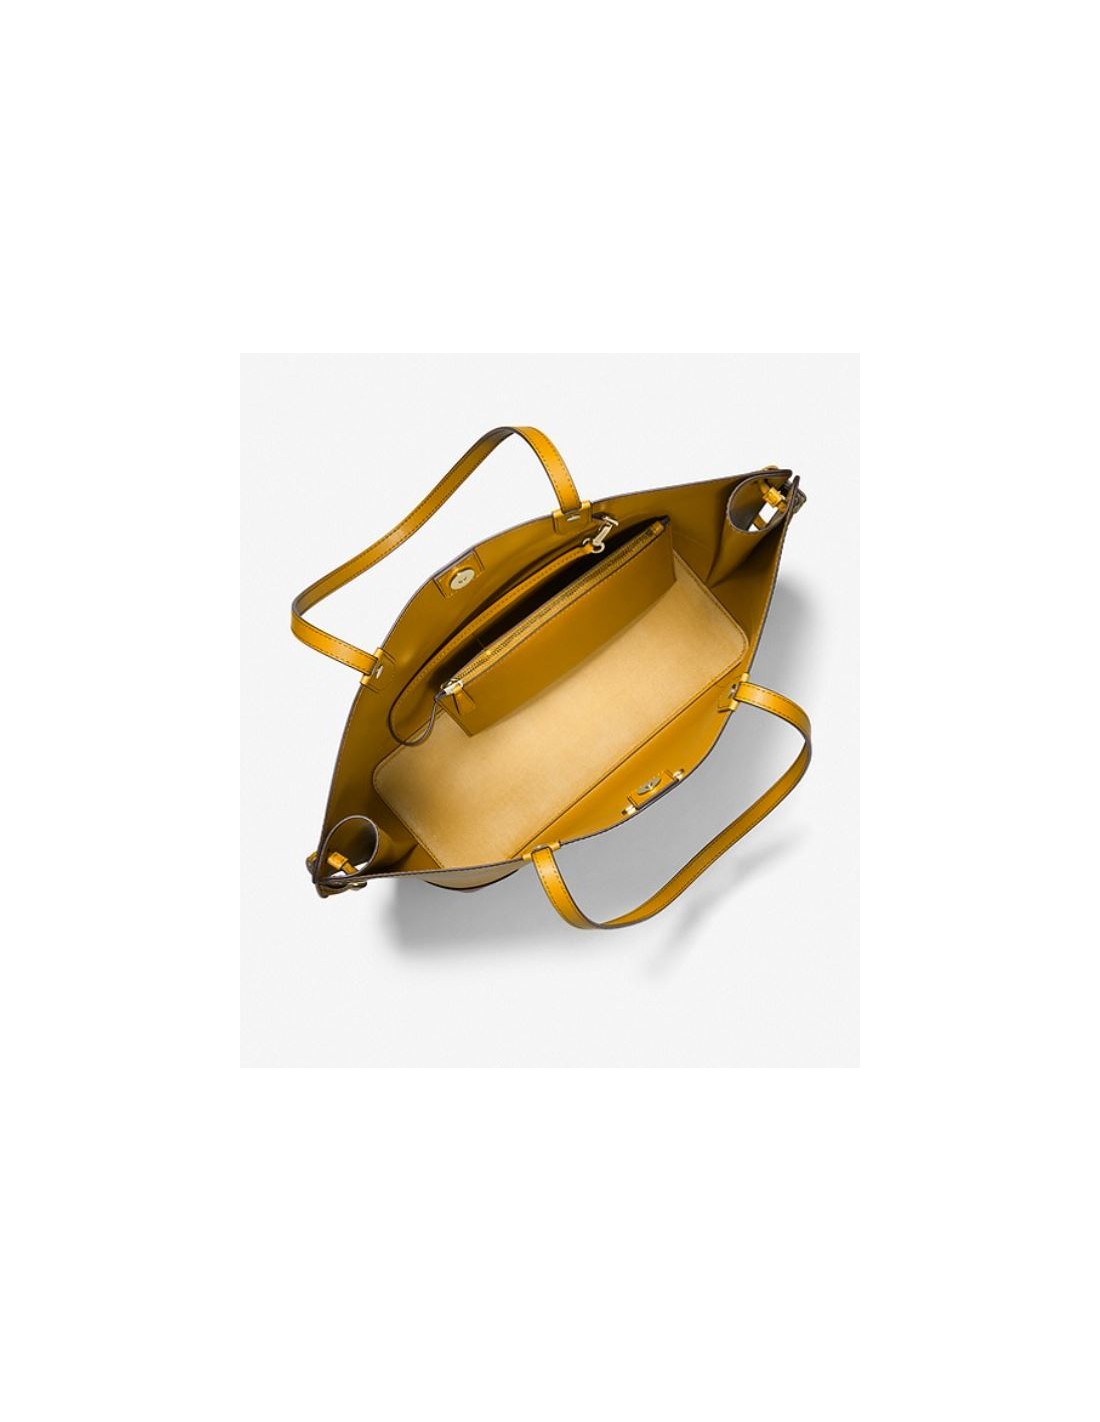 Michael Kors - Edith Large Saffiano Leather Tote Bag - 30T2G7ET3L - 196163326184